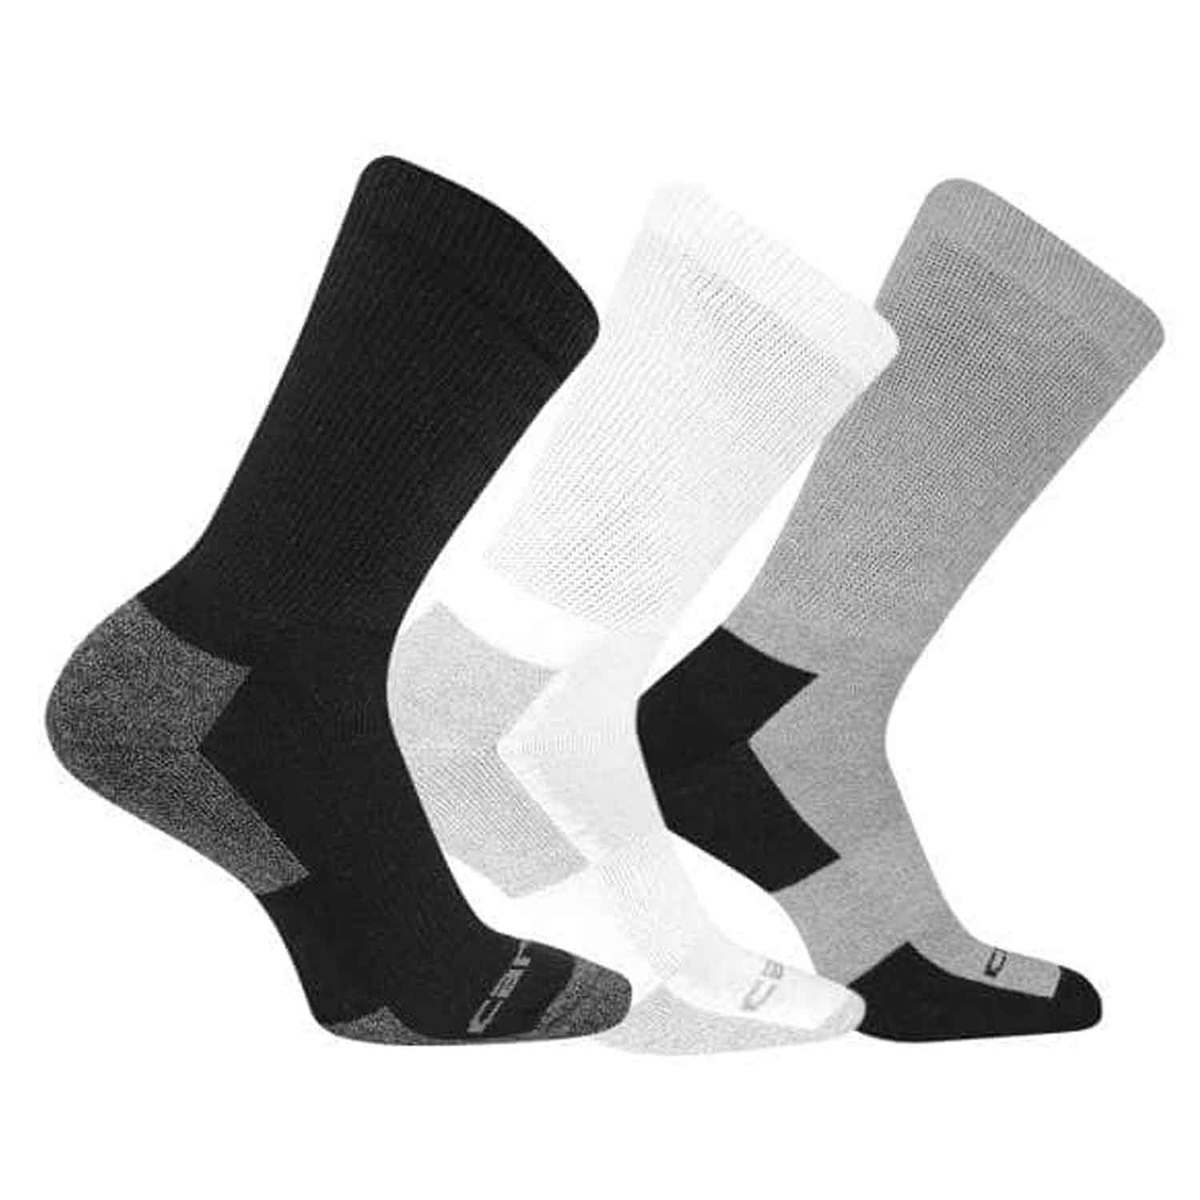 Carhartt Men's All Season Work Socks - Black/White/Gray - XL - Black ...